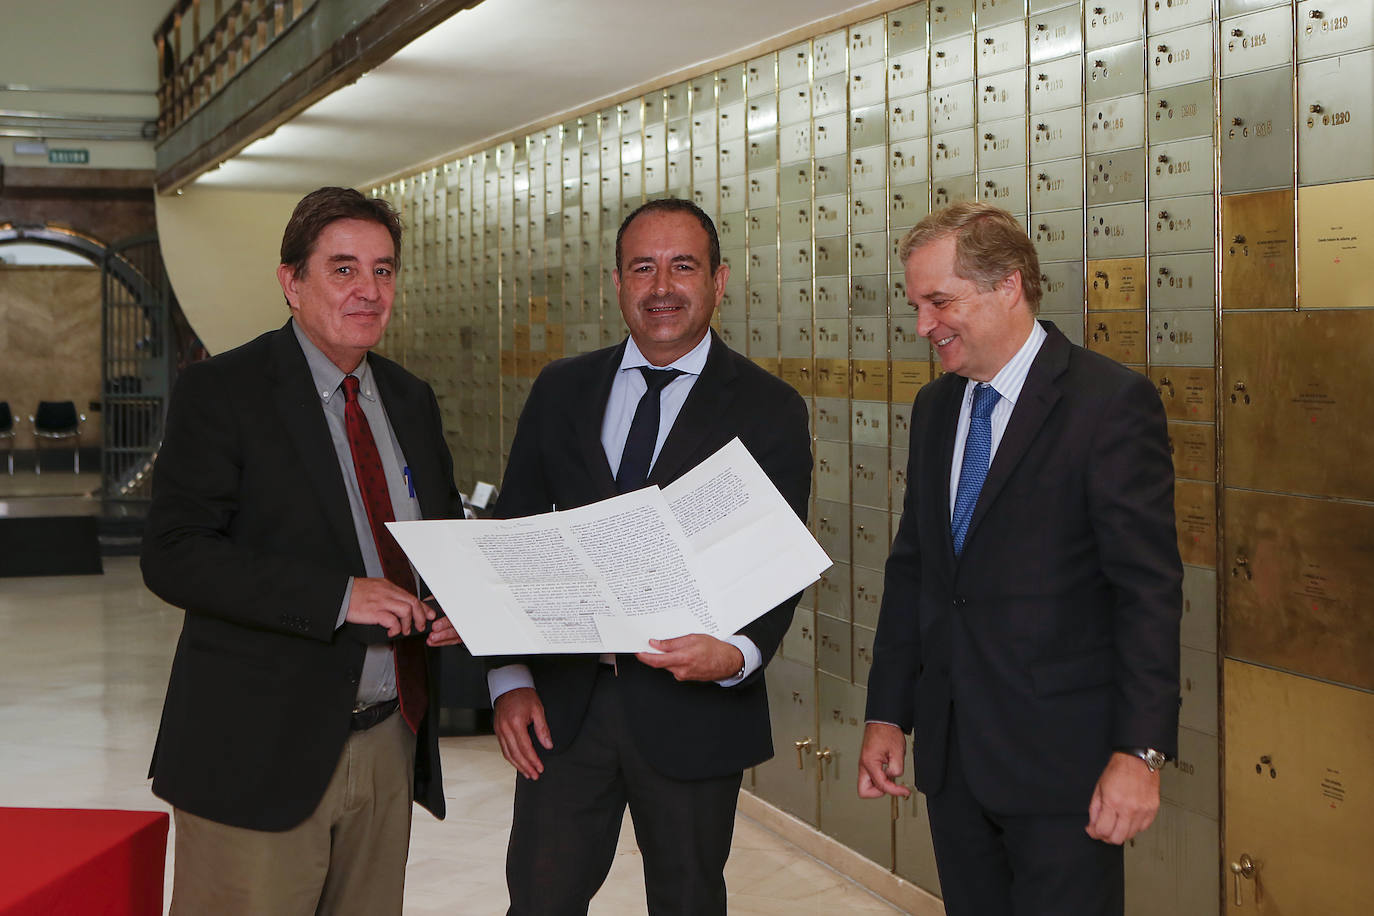 En el centro, Manolo Castillo, director de Sur, entre Luis García Montero, director del Instituto Cervantes e Ignacio Ybarra, presidente de Vocento.